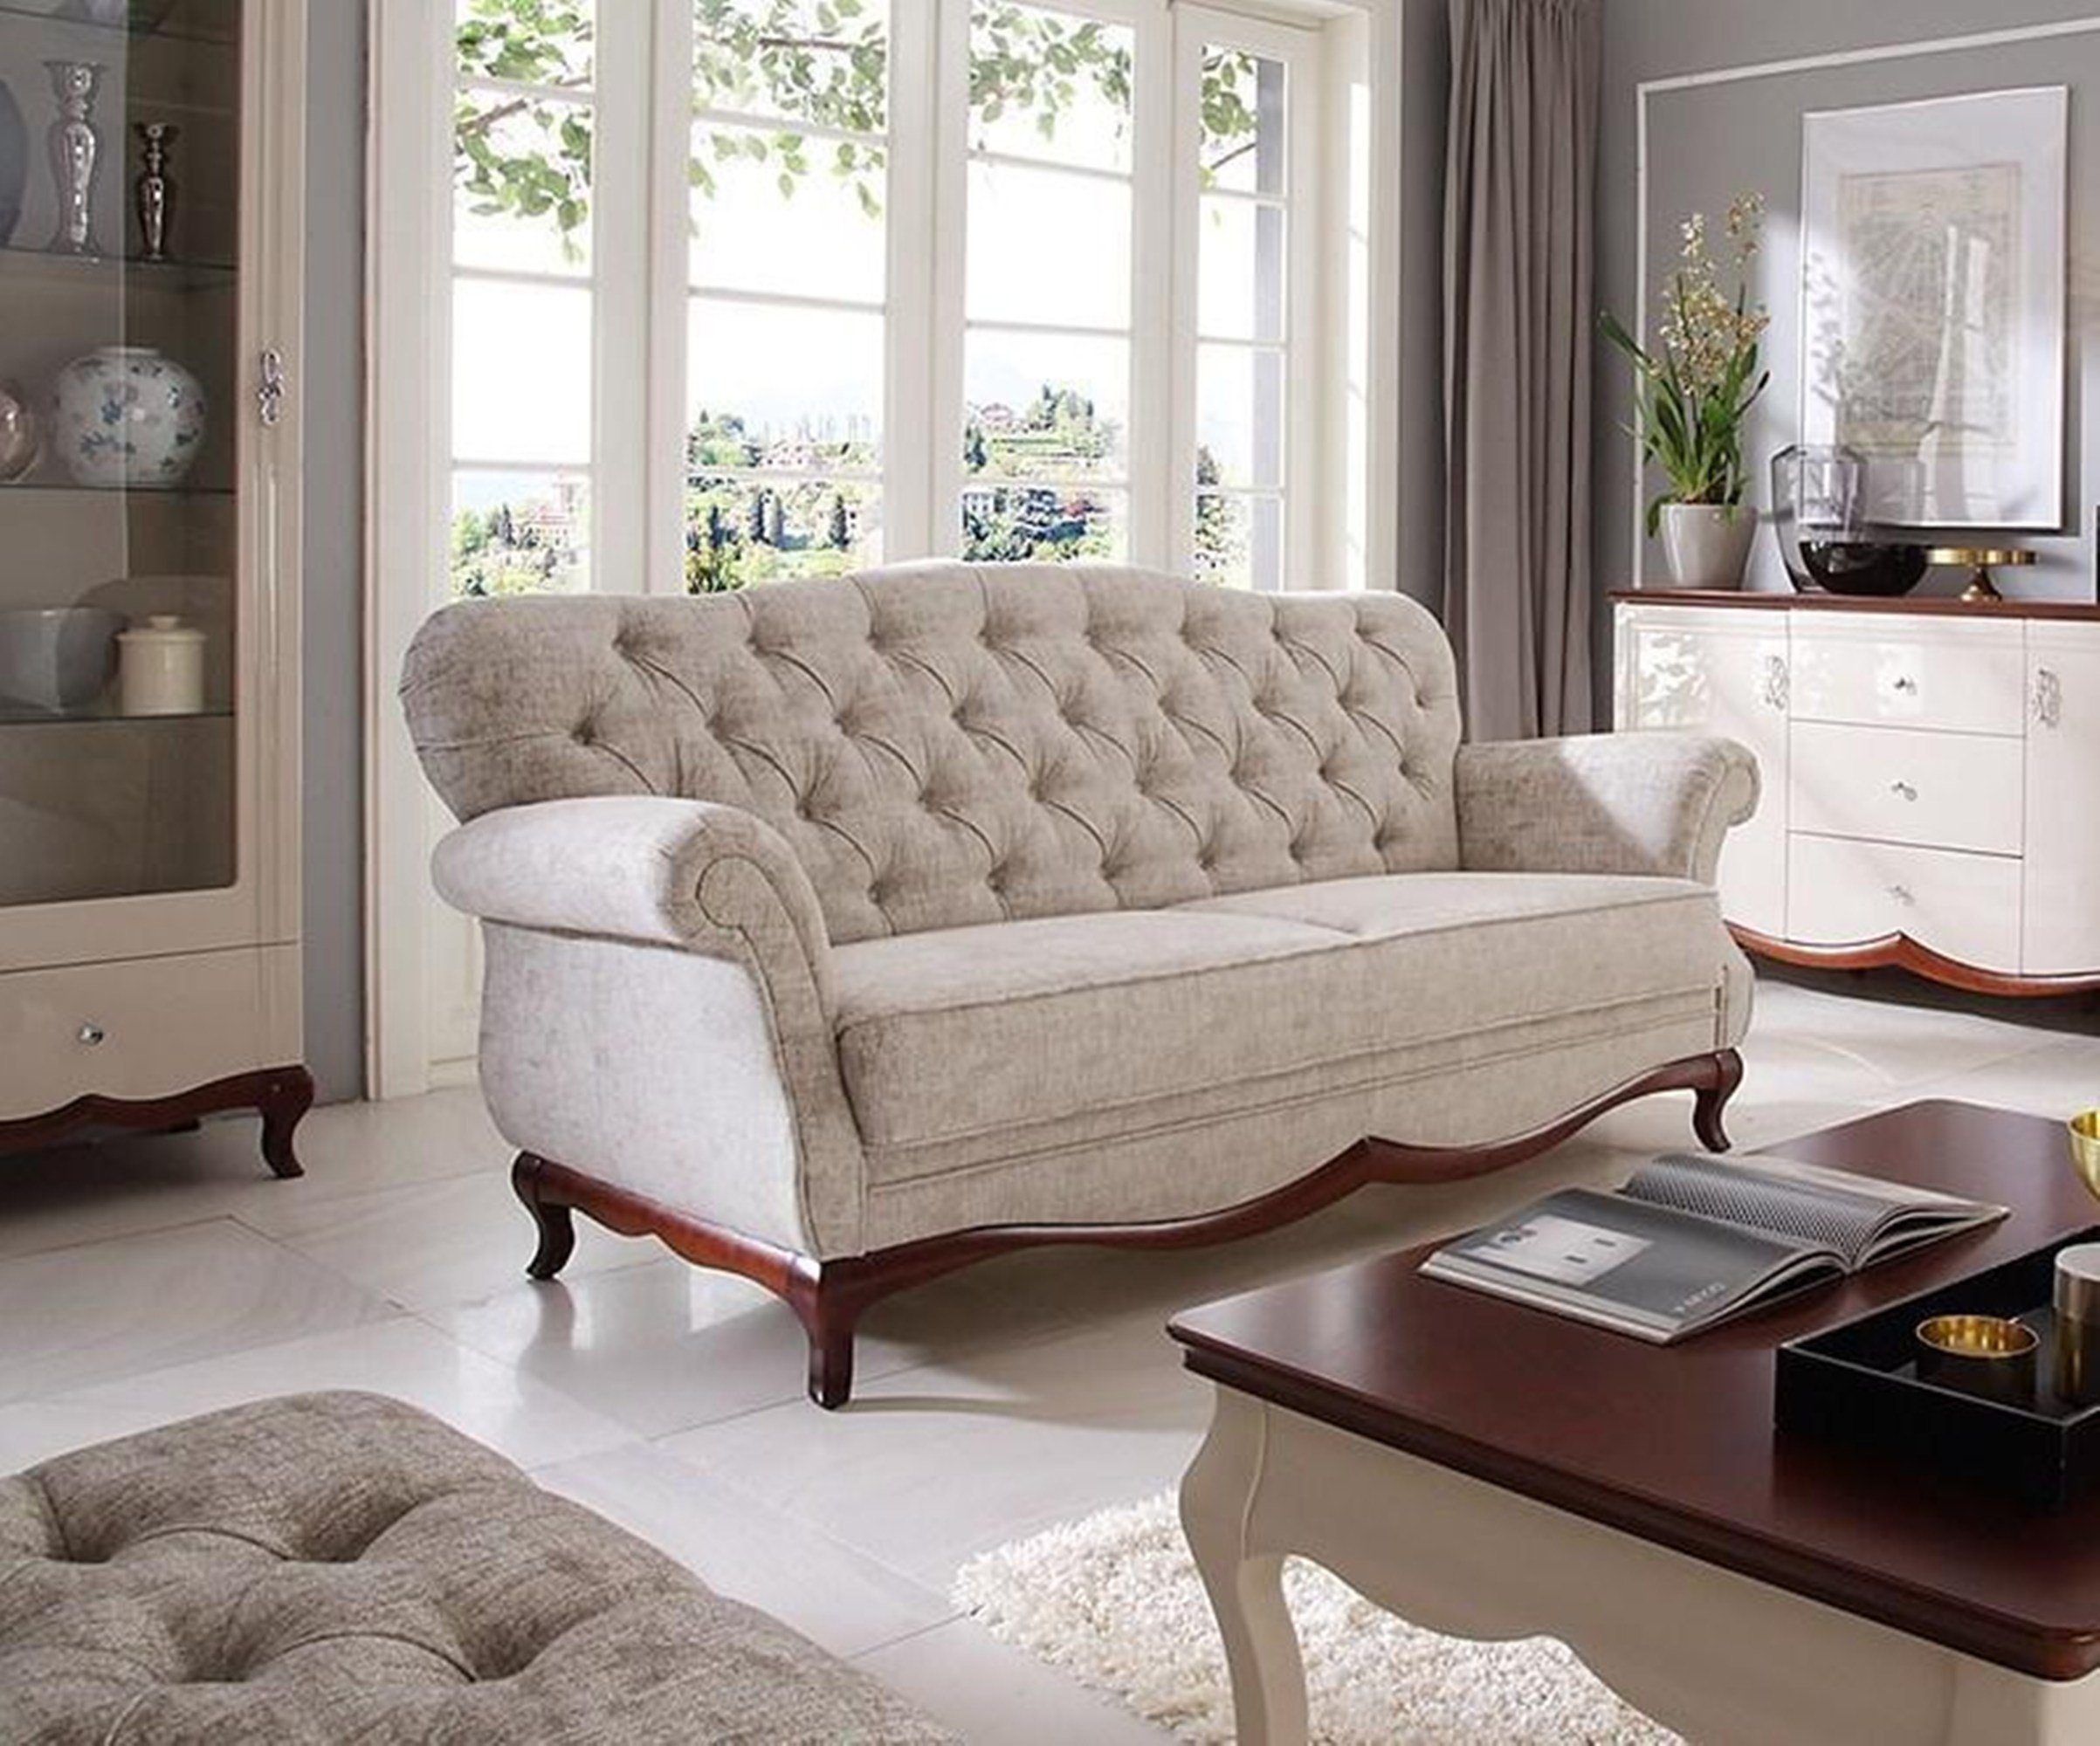 JVmoebel Sofa, Chesterfield Schlafsofa Sofa mit Bettfunktion Dreisitzer Couch Textil